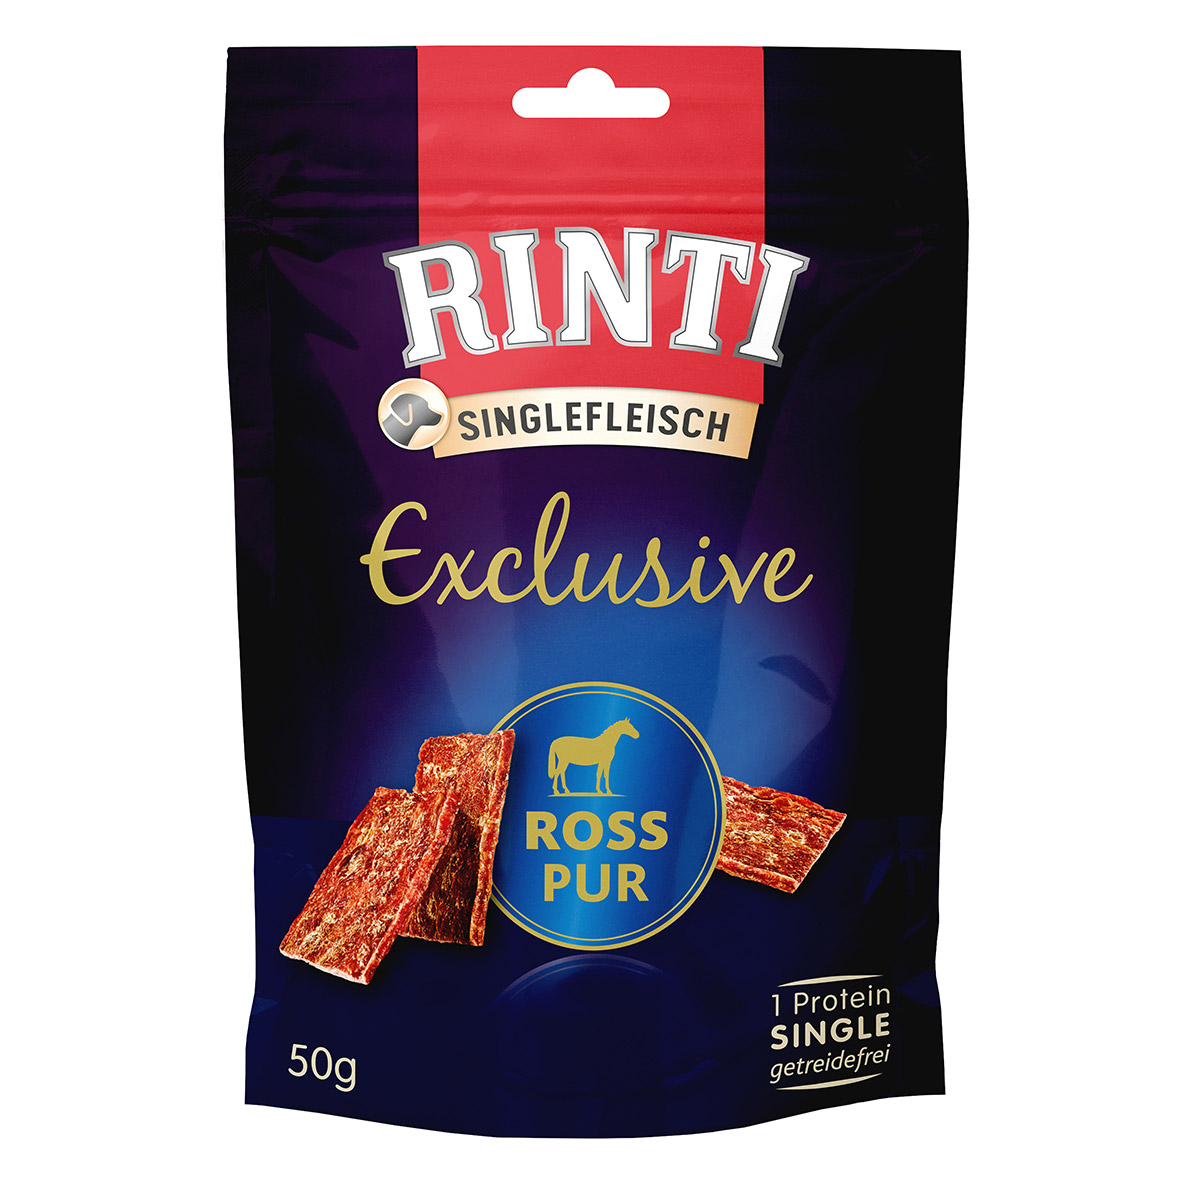 rinti singlefleisch exclusive snack ross pur 50g